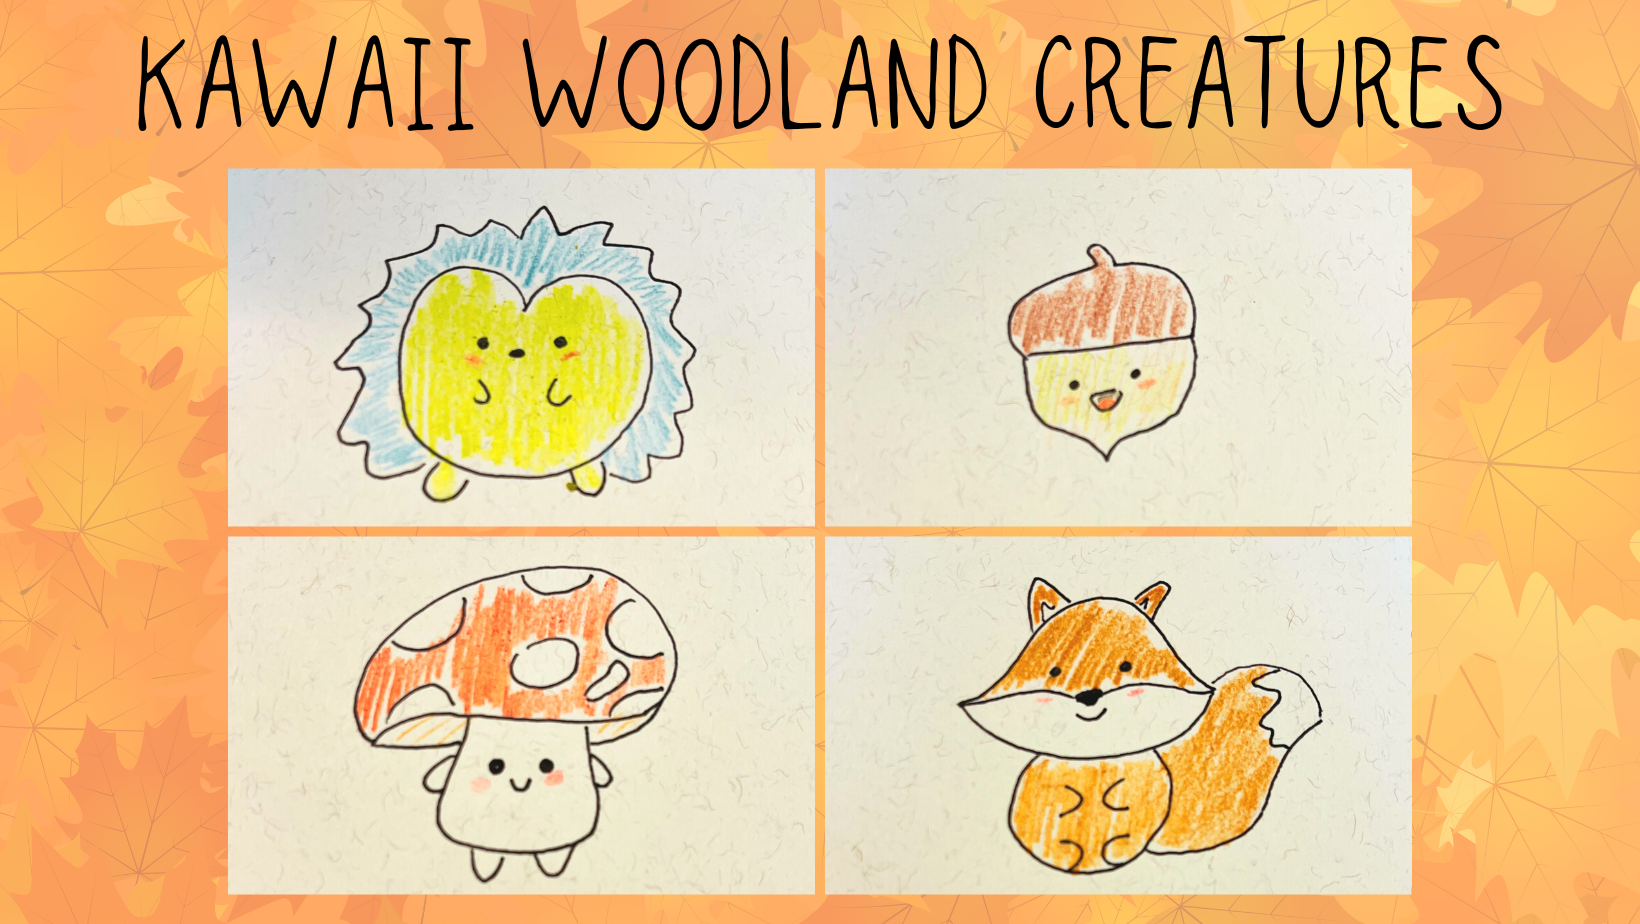 Woodland kawaii creatures - hedgehog, acorn, mushroom and fox